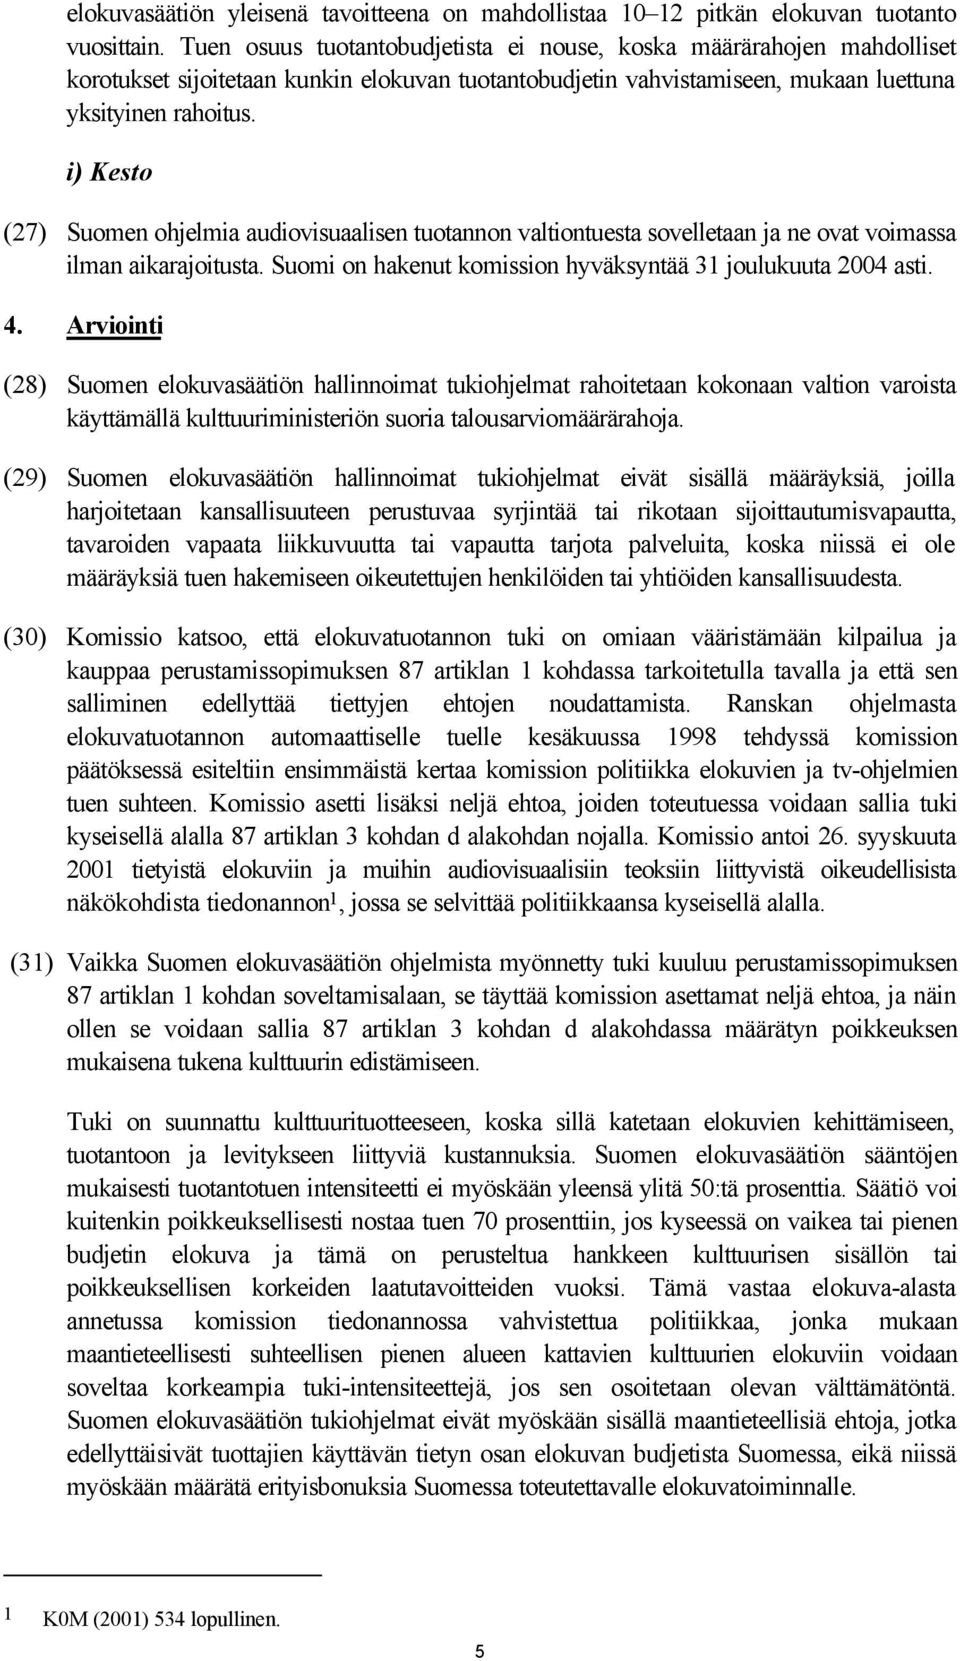 i) Kesto (27) Suomen ohjelmia audiovisuaalisen tuotannon valtiontuesta sovelletaan ja ne ovat voimassa ilman aikarajoitusta. Suomi on hakenut komission hyväksyntää 31 joulukuuta 2004 asti. 4.